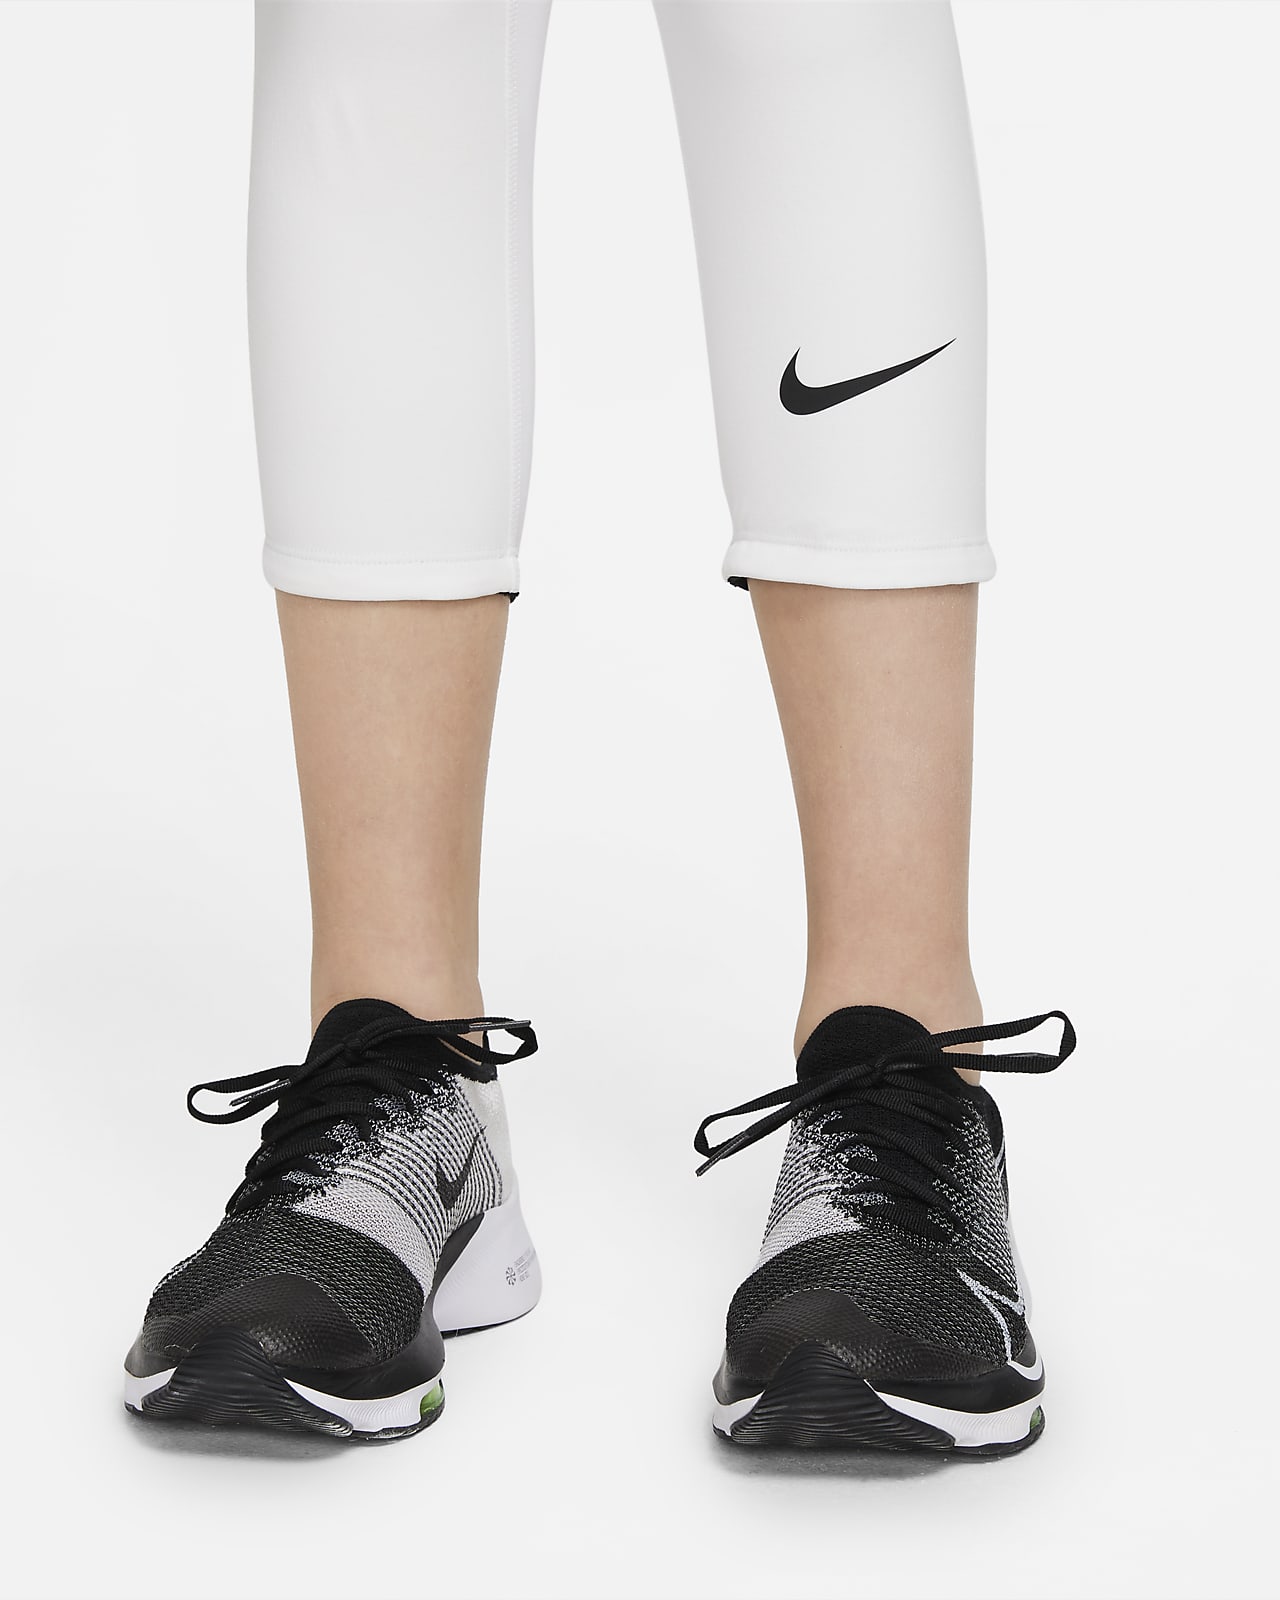 Nike Pro Dri-FIT Men's 3/4 Tights